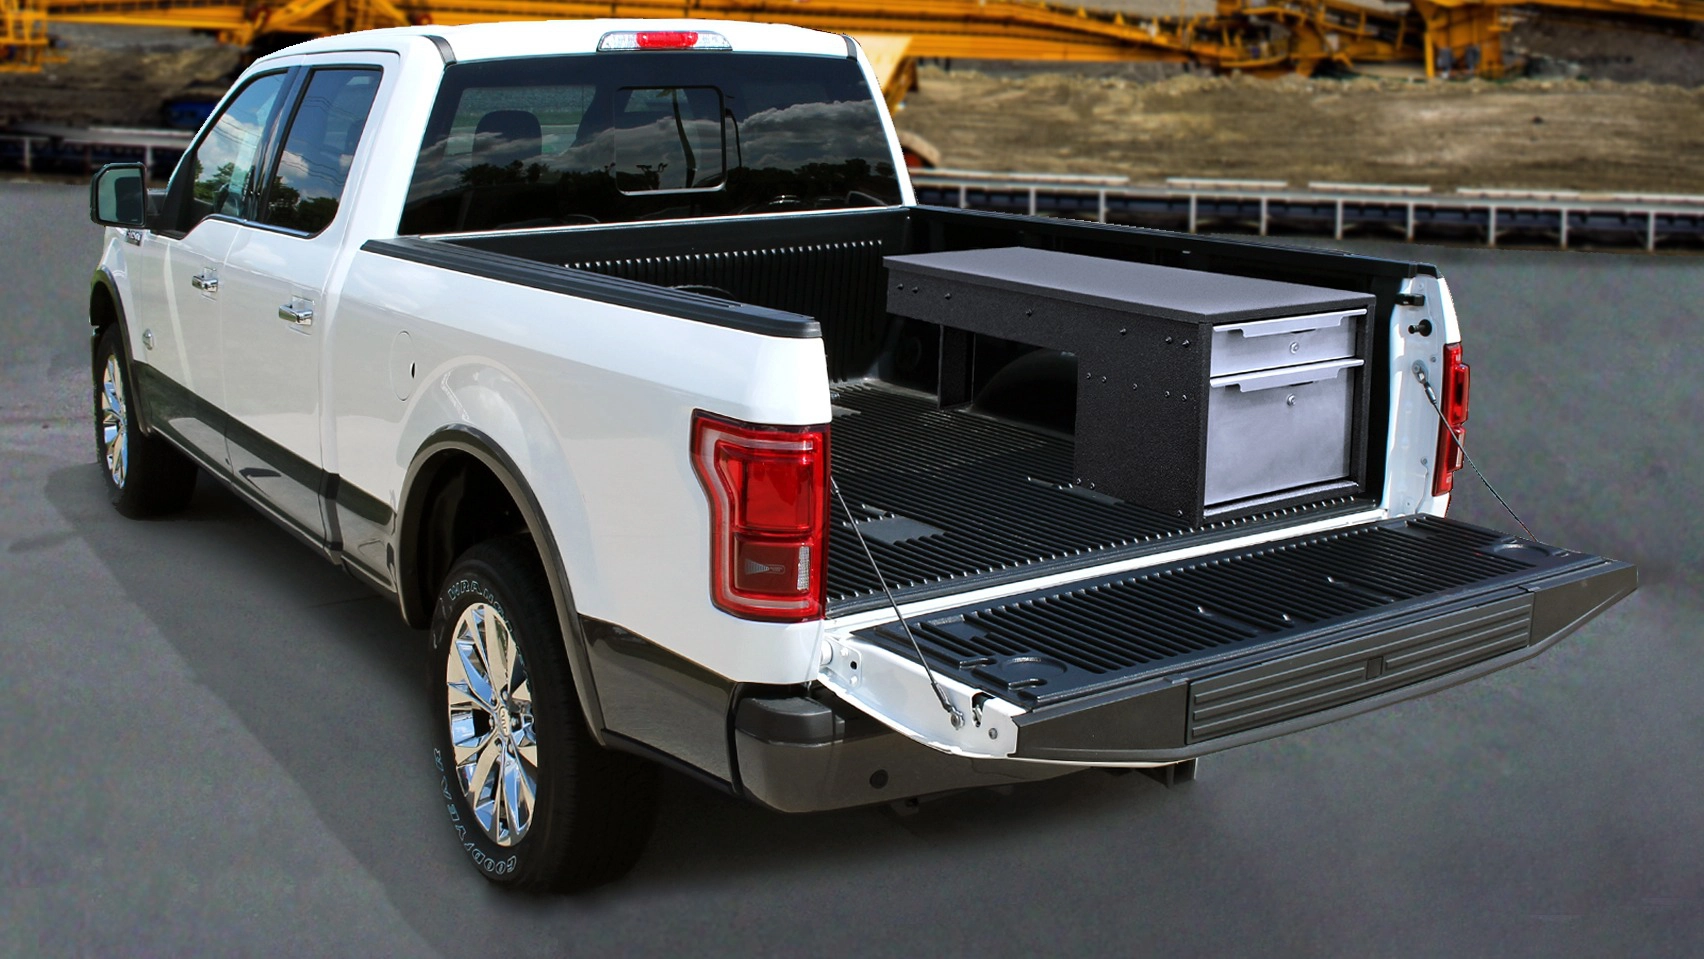 truck bed storage